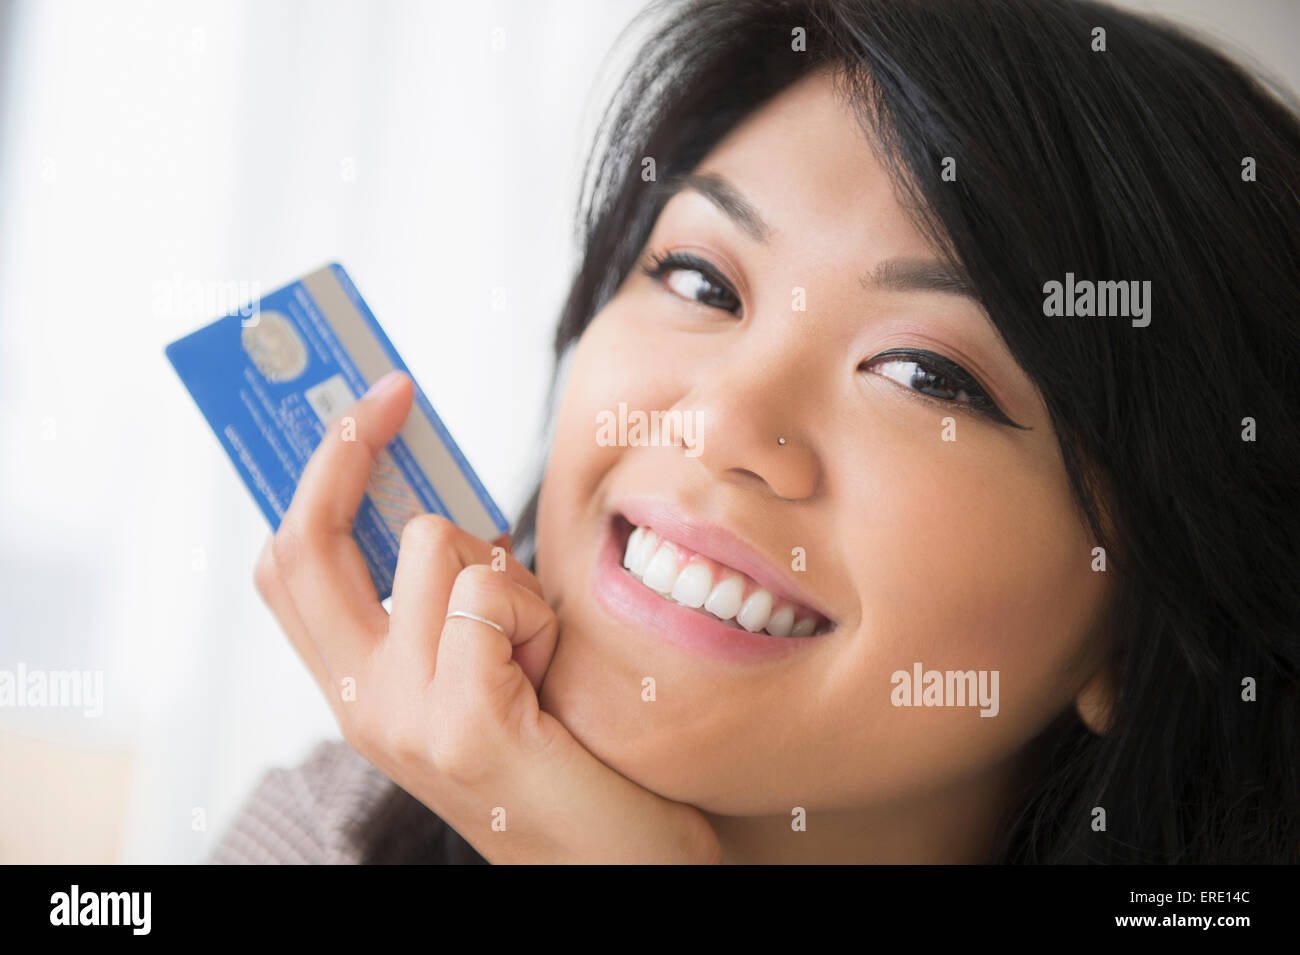 Sorridente Pacific Islander donna azienda carta di credito Foto Stock